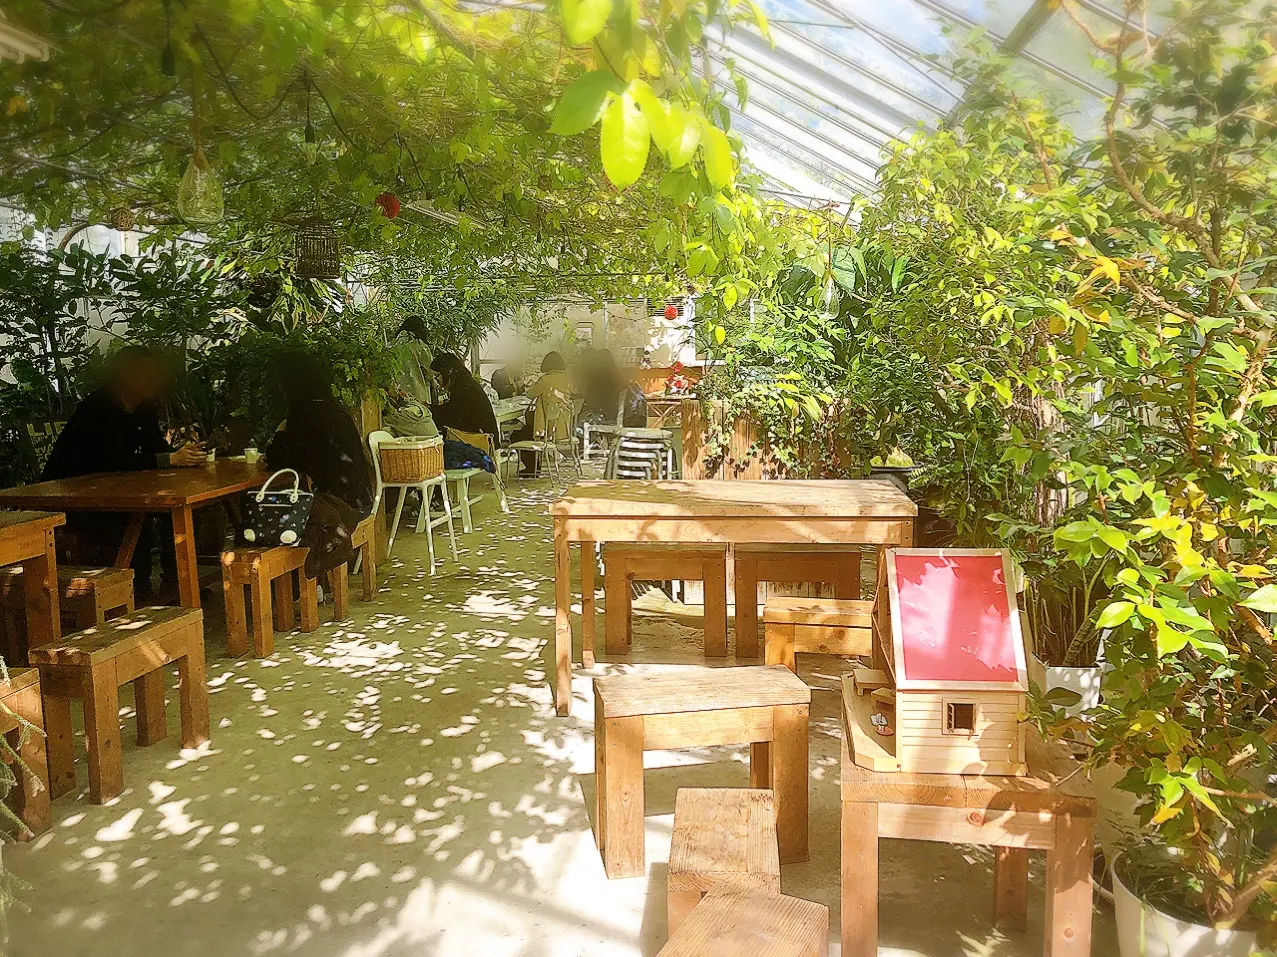 静岡 メロン農園直営 緑に包まれたガーデンのようなカフェが魅力 甘 いメロンをいただきました Moreインフルエンサーズブログ Daily More